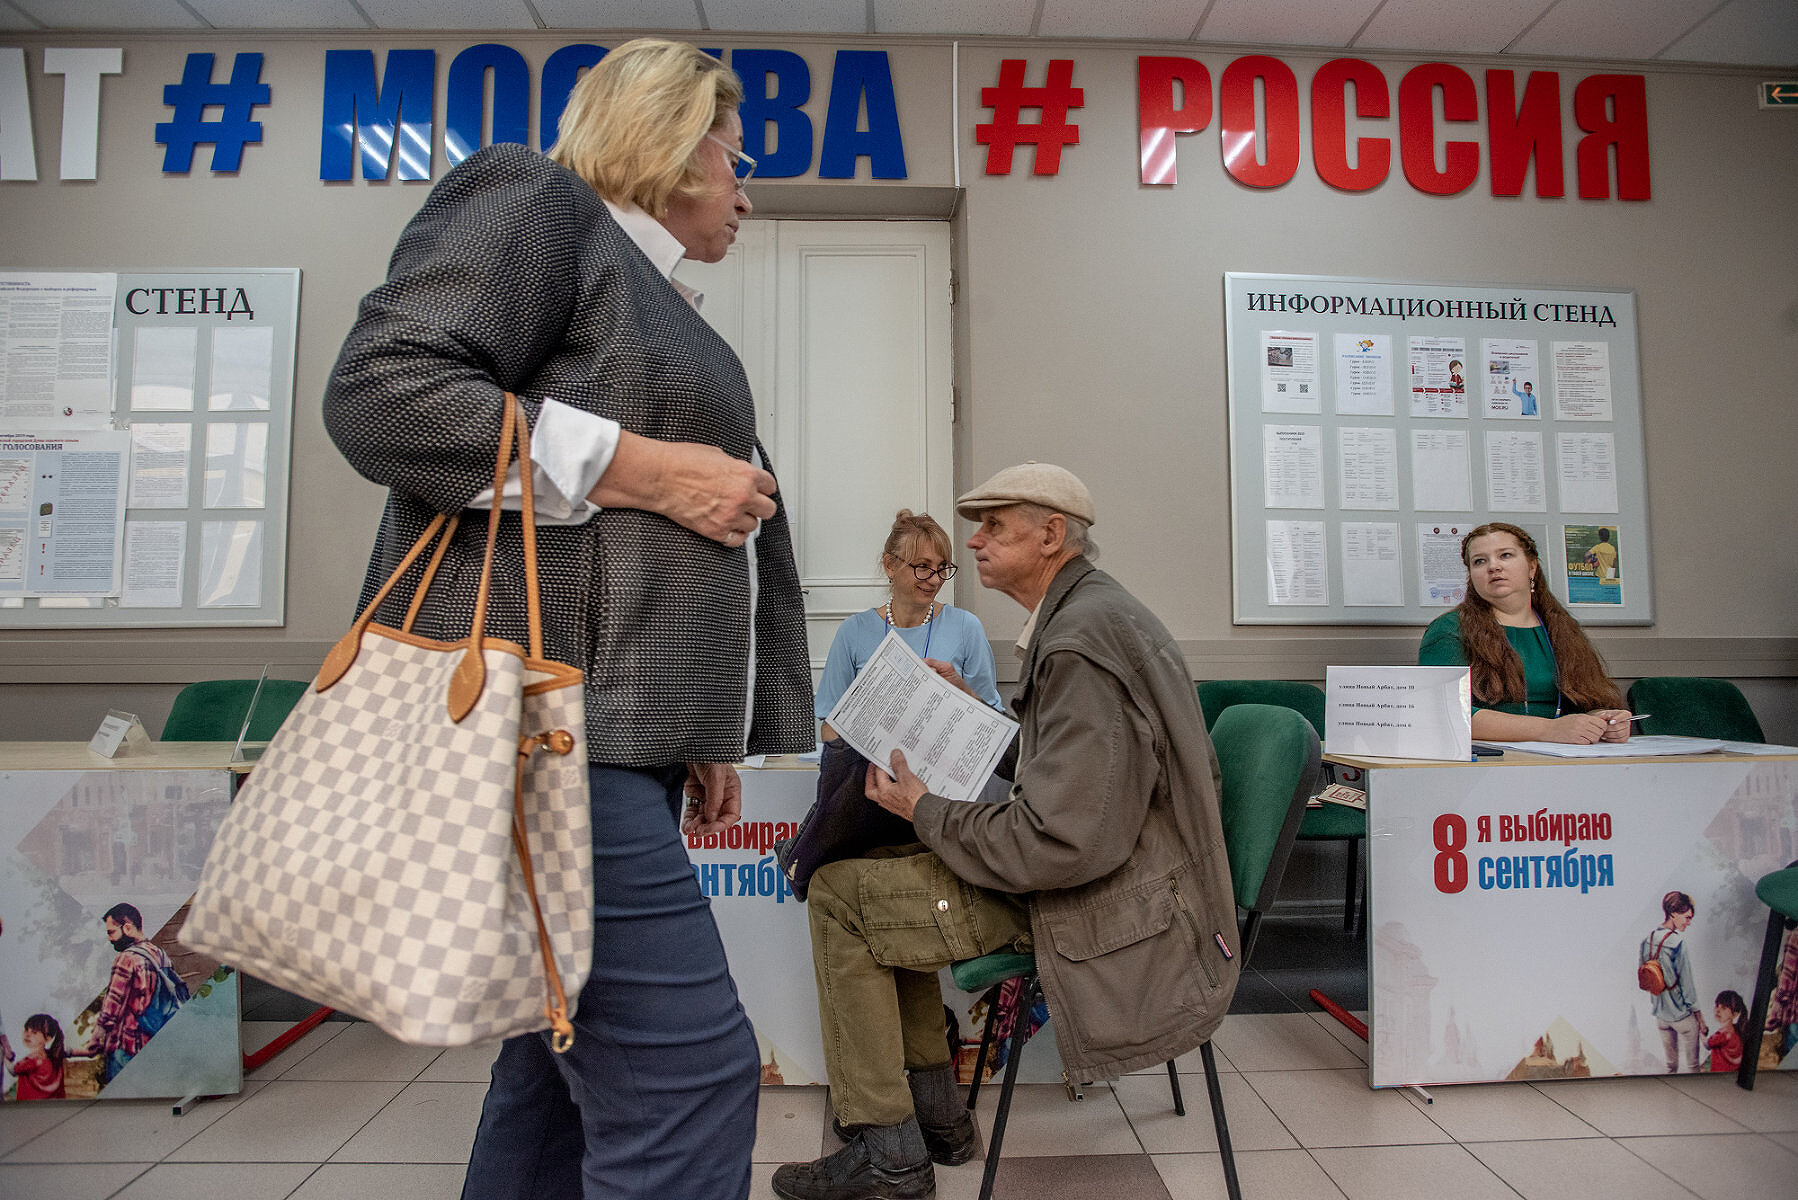 <p>8 сентября, Москва. Голосование за кандидатов в Мосгордуму</p>